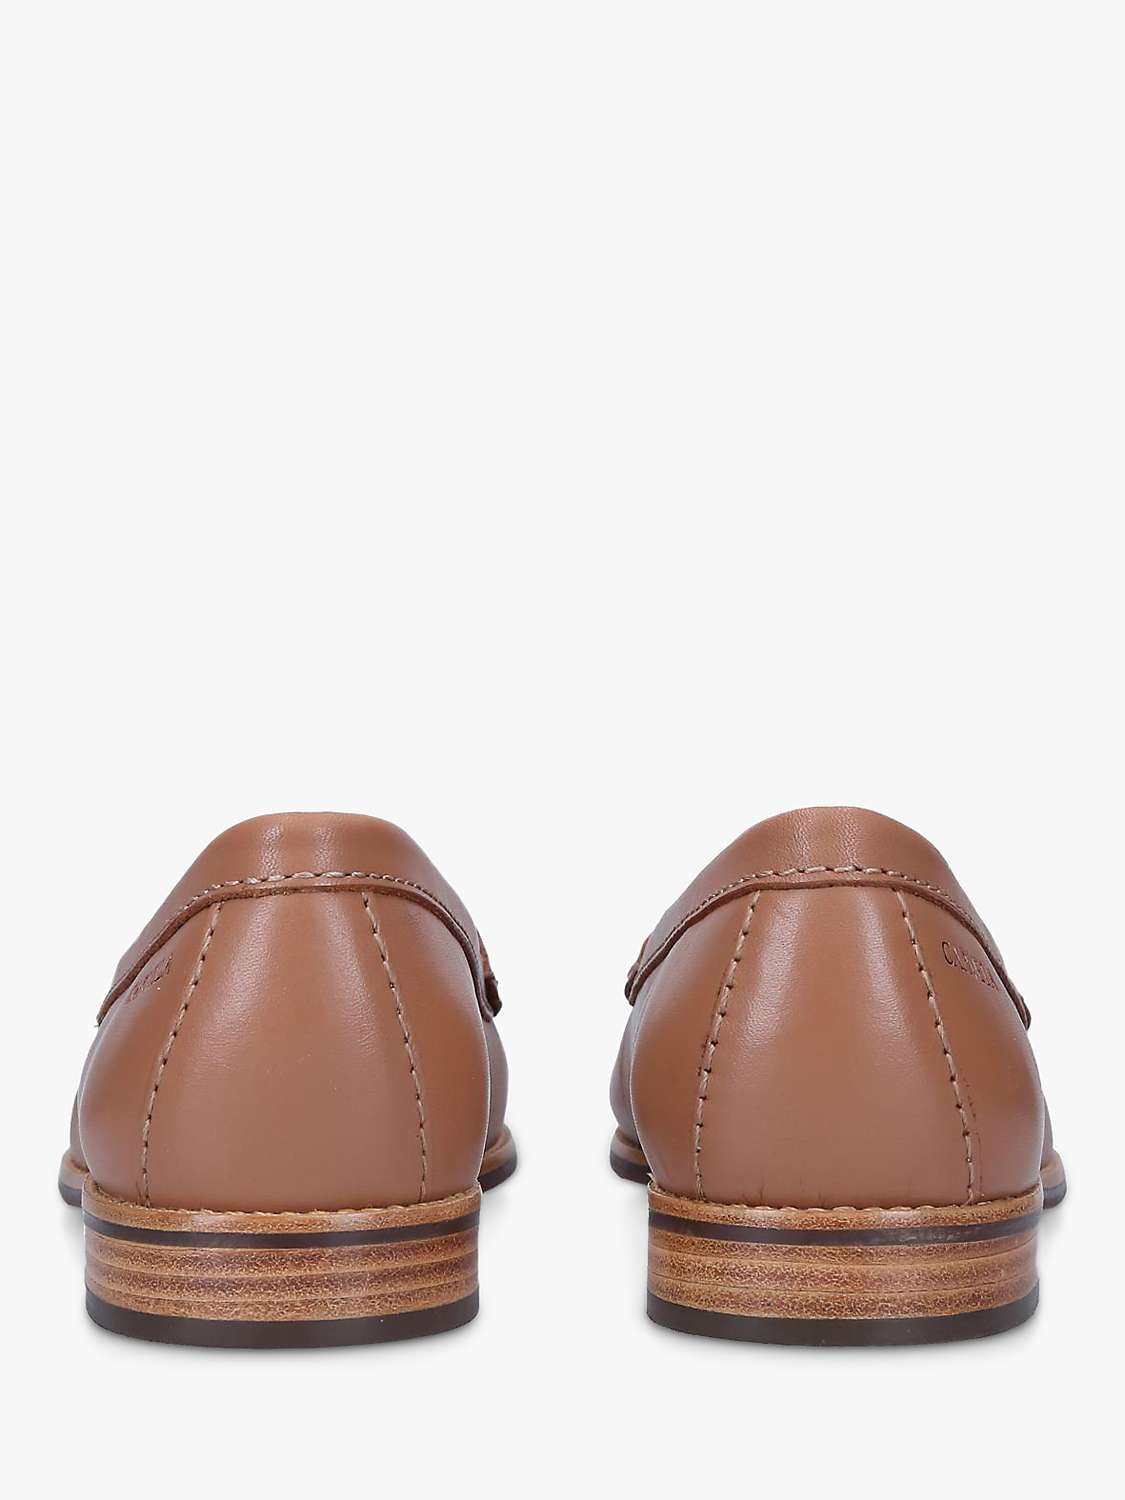 Buy Carvela Comfort Click 2 Loafers Online at johnlewis.com